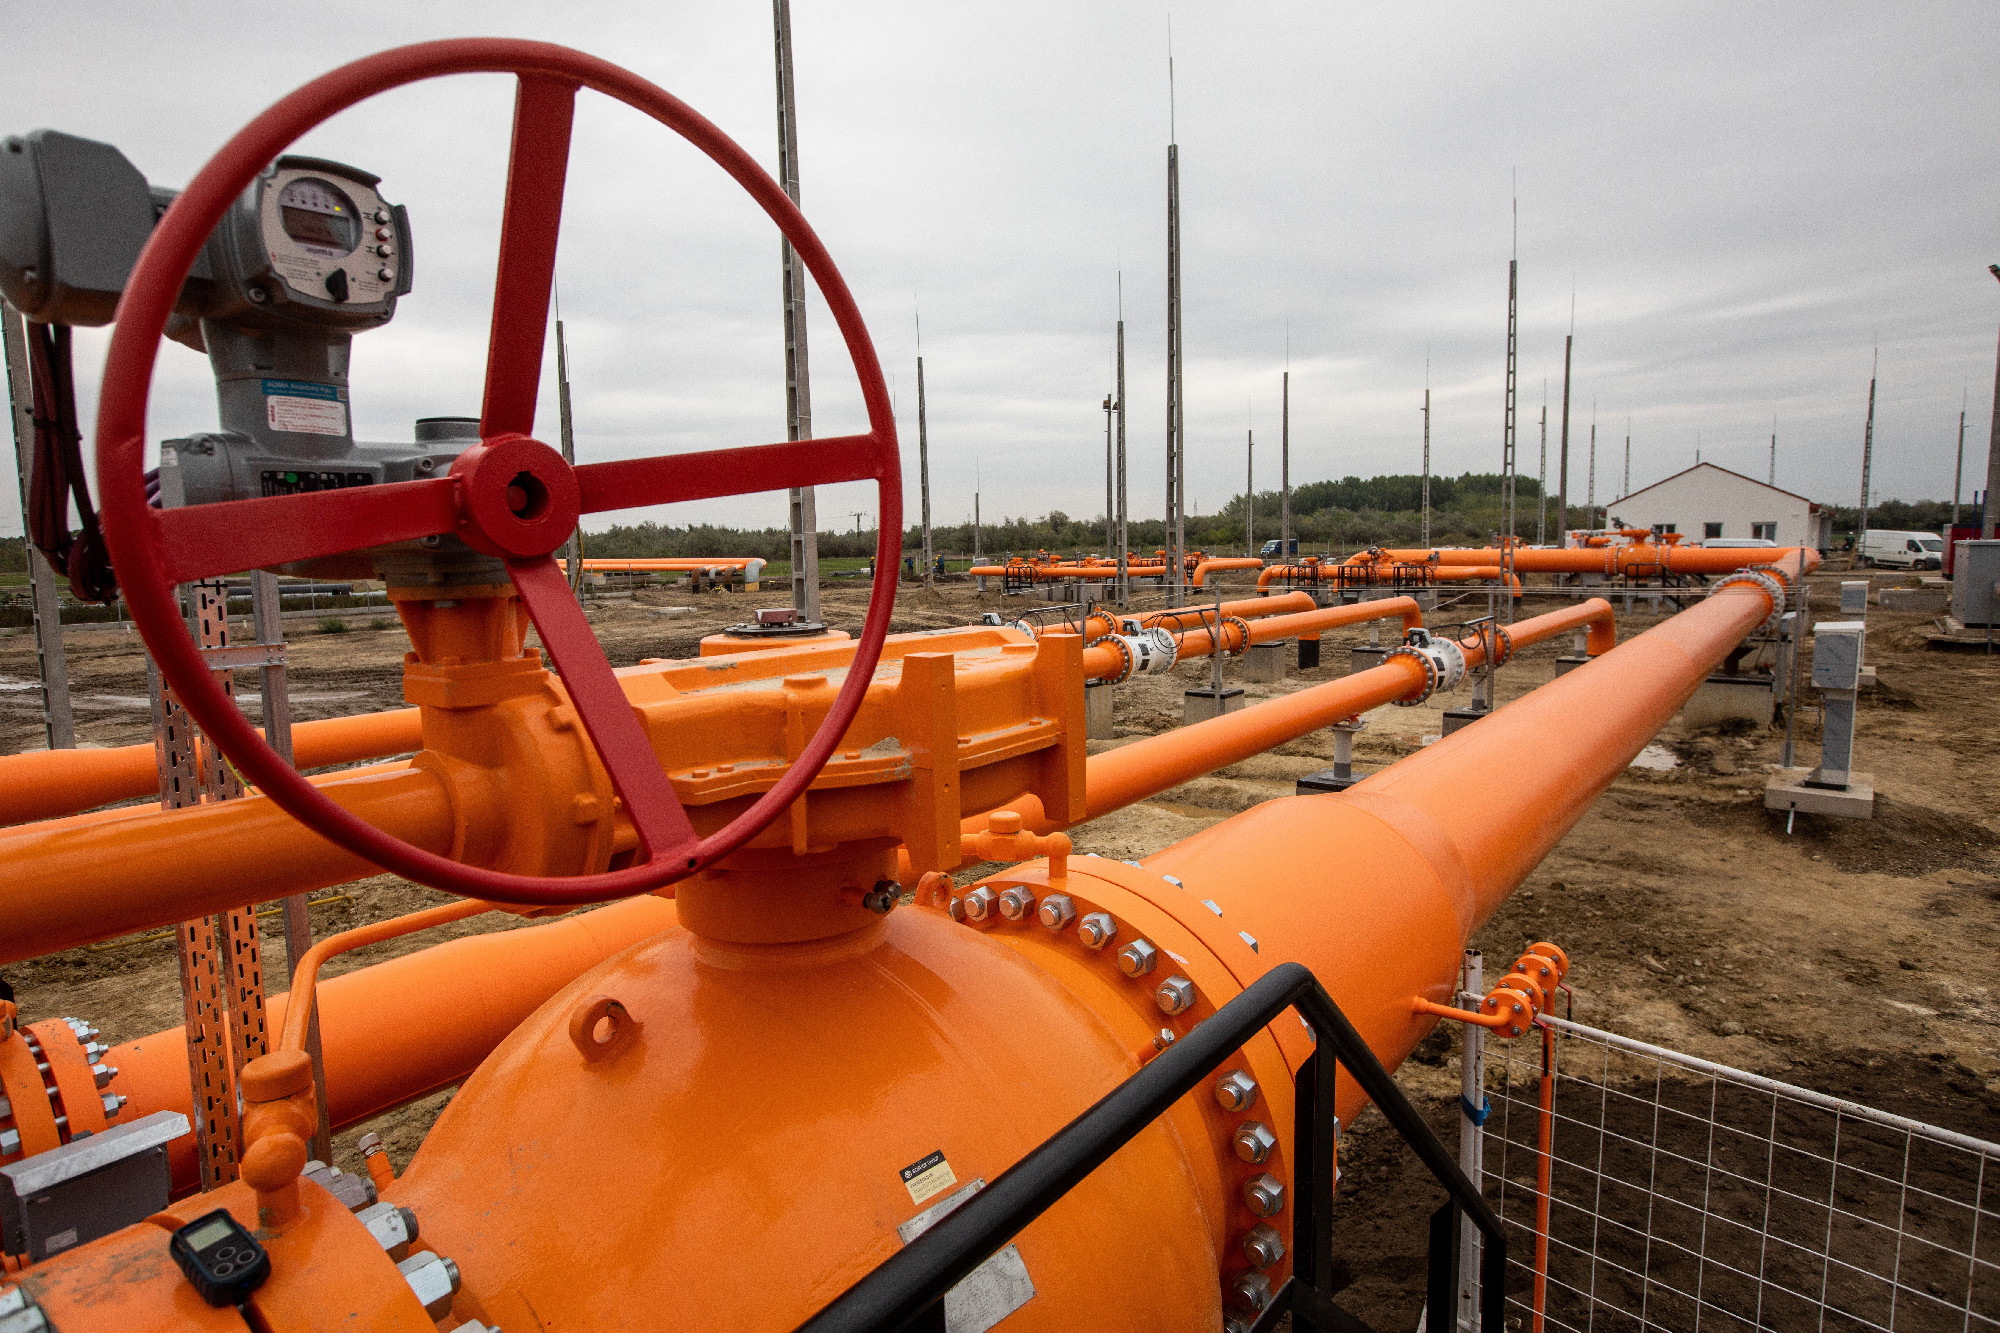 825 milliárd forintra növelte a kormány a különleges földgázkészlet hitelösszegét